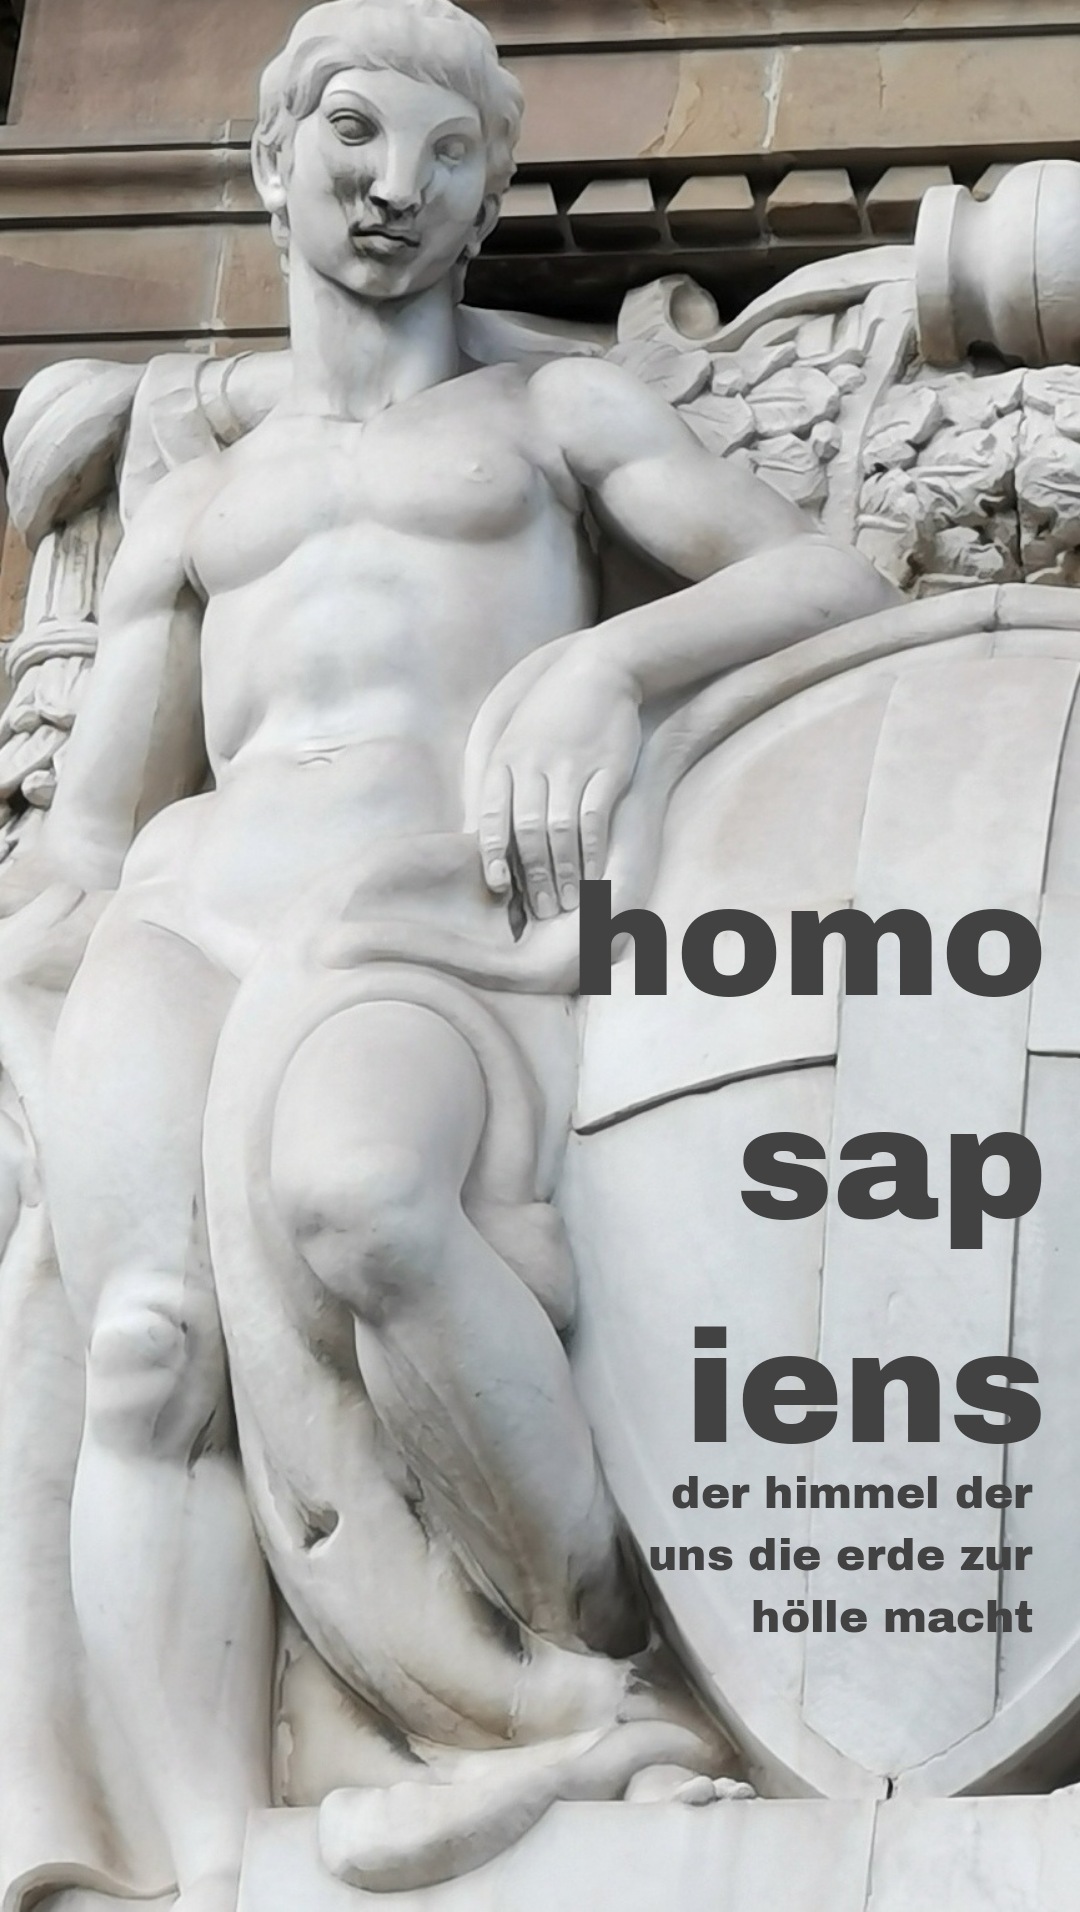 Homosapiens... sapiens...